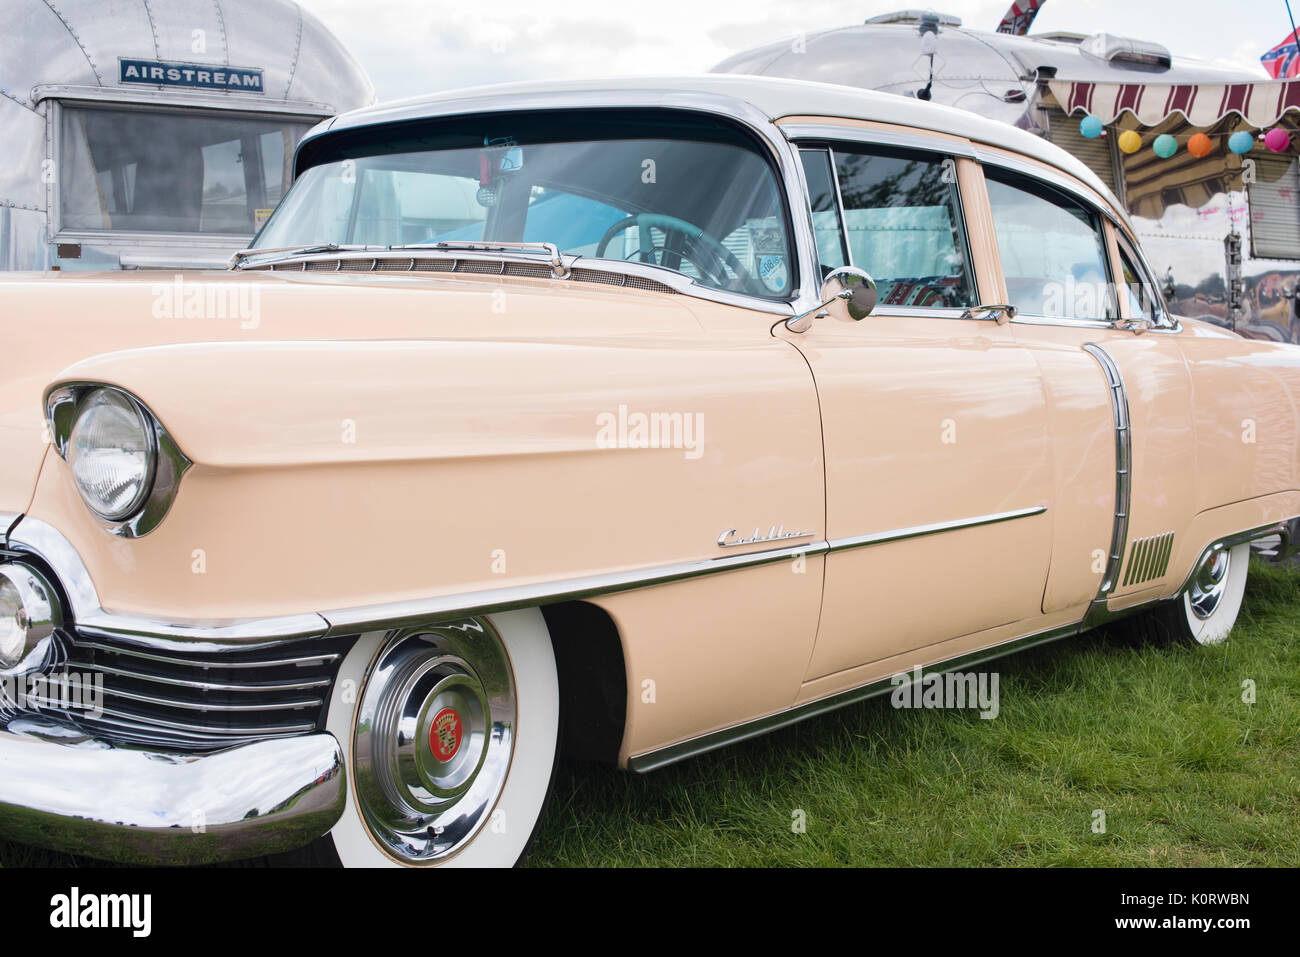 1954 cadillac américaine voiture et caravane Airstream vintage retro à un festival. UK Banque D'Images